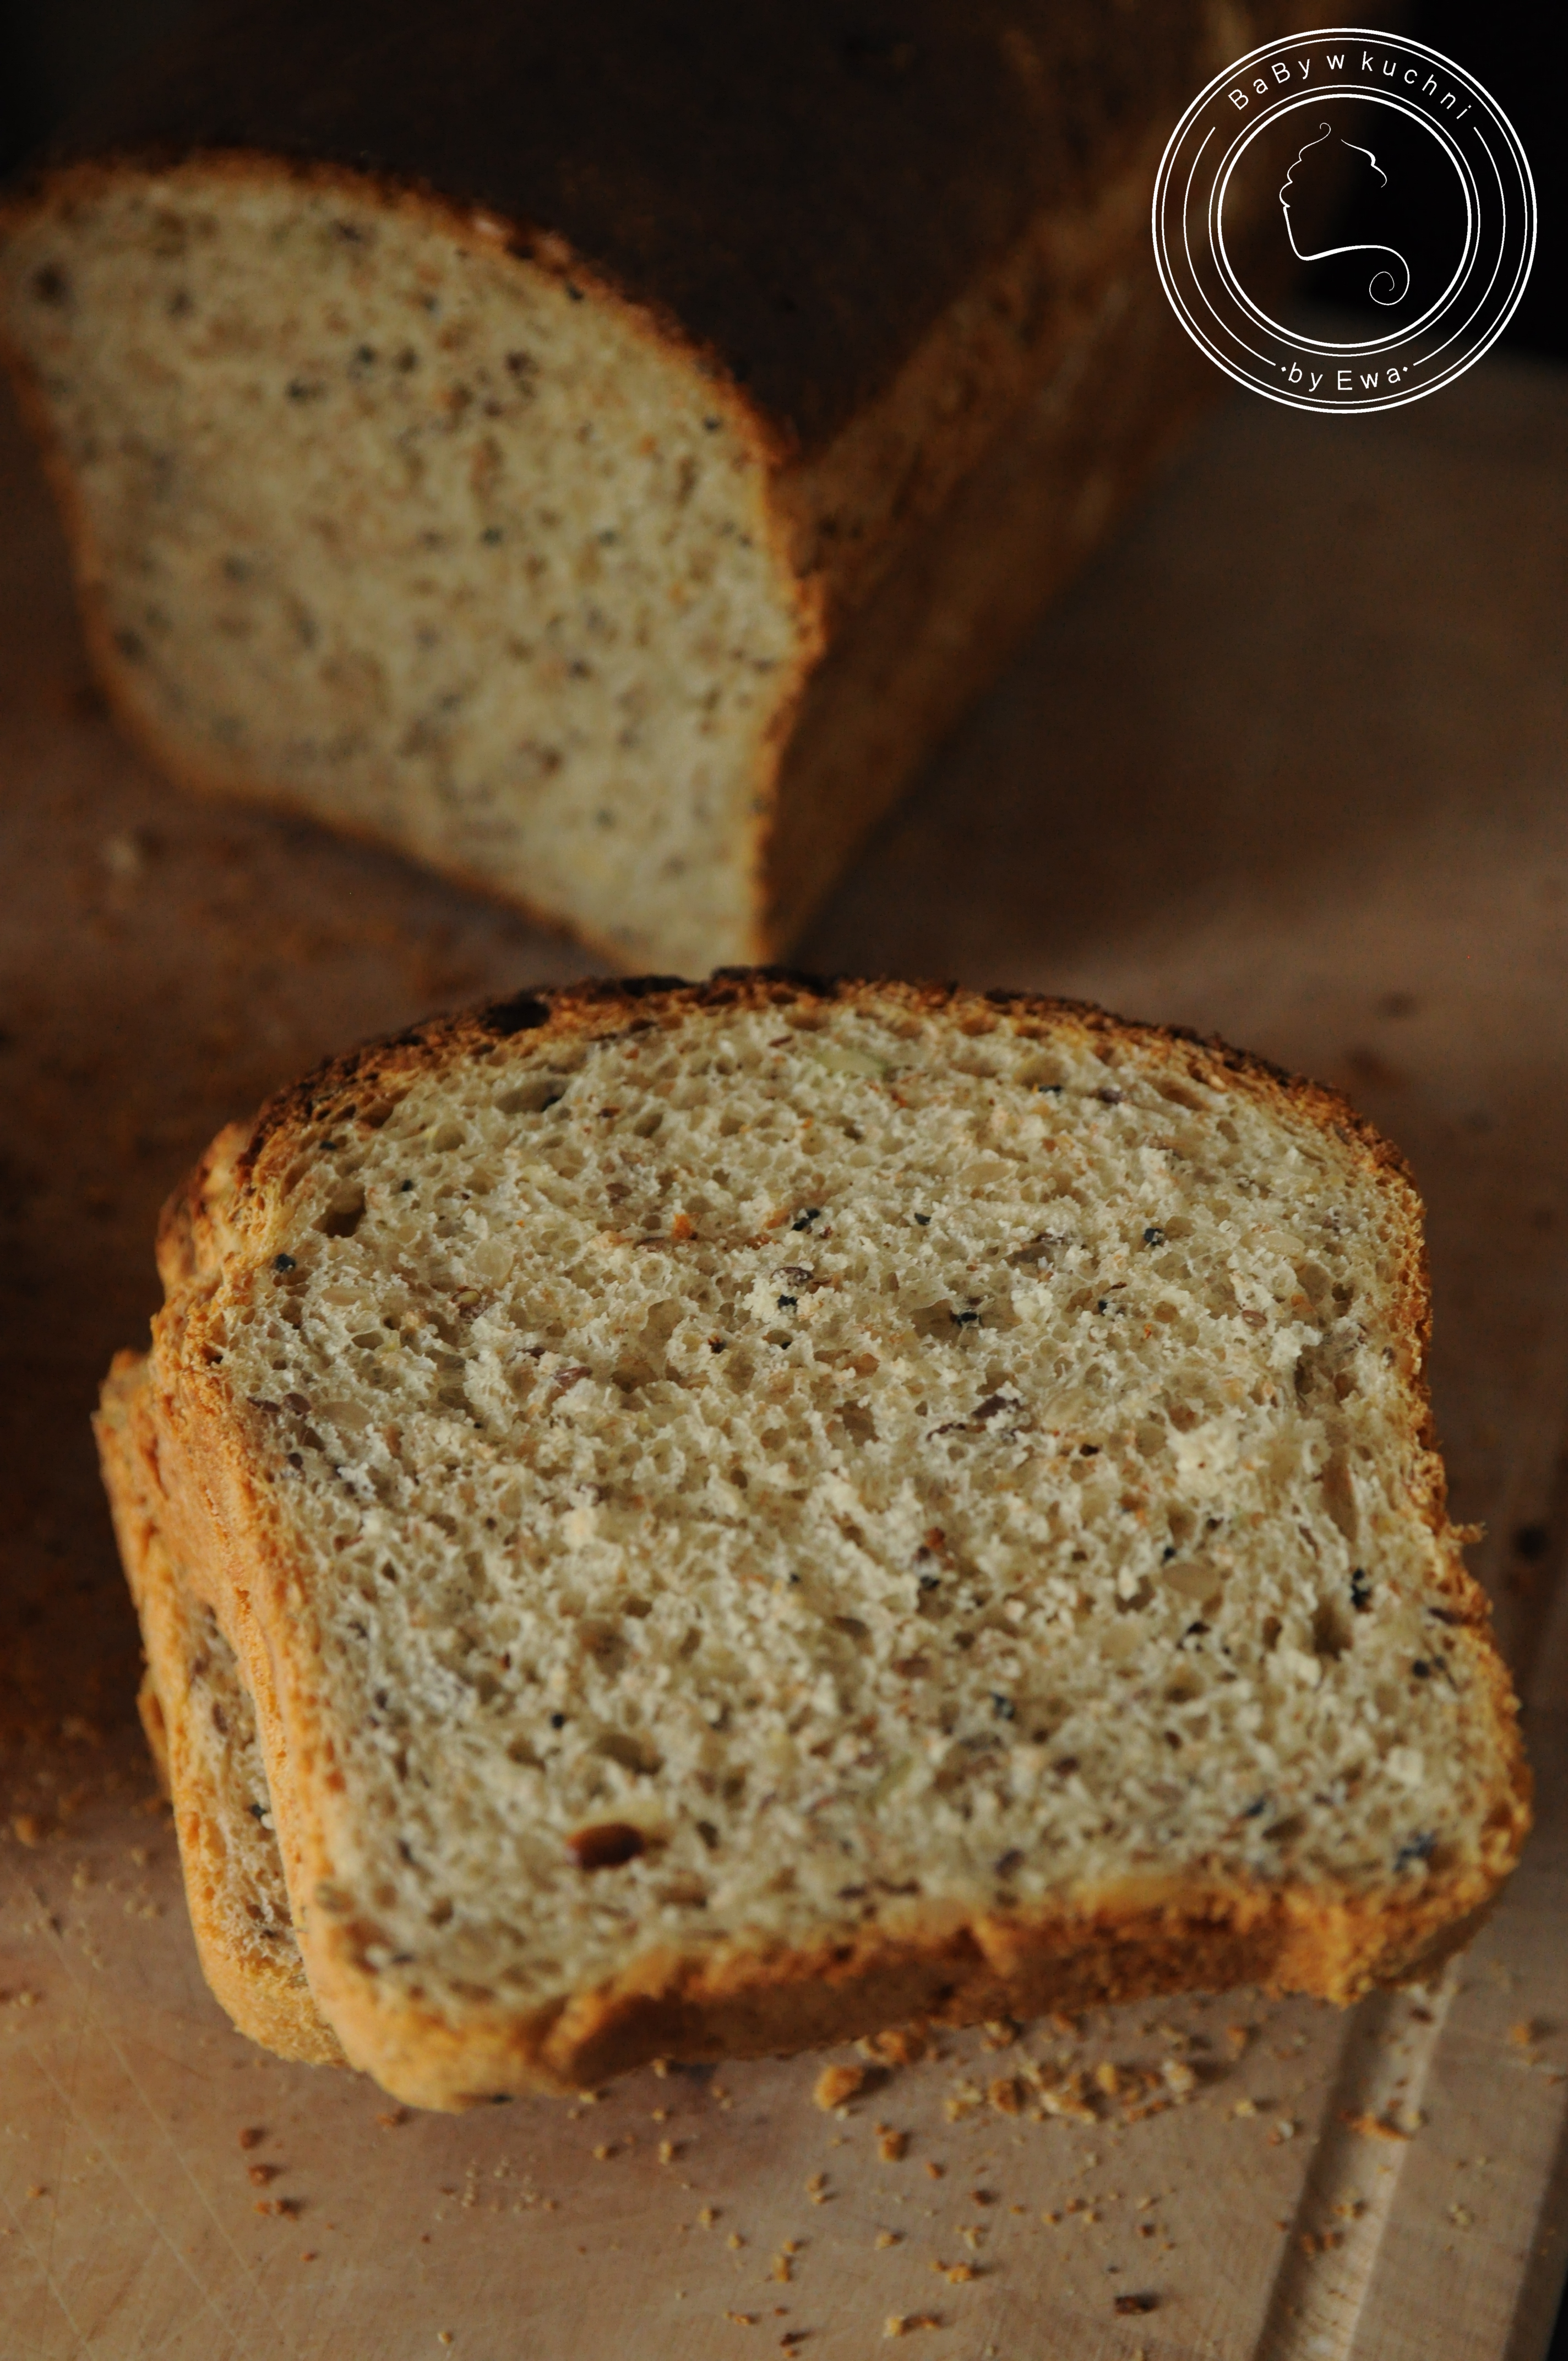 Chleb pszenny z ziarnami wg Piotra Kucharskiego